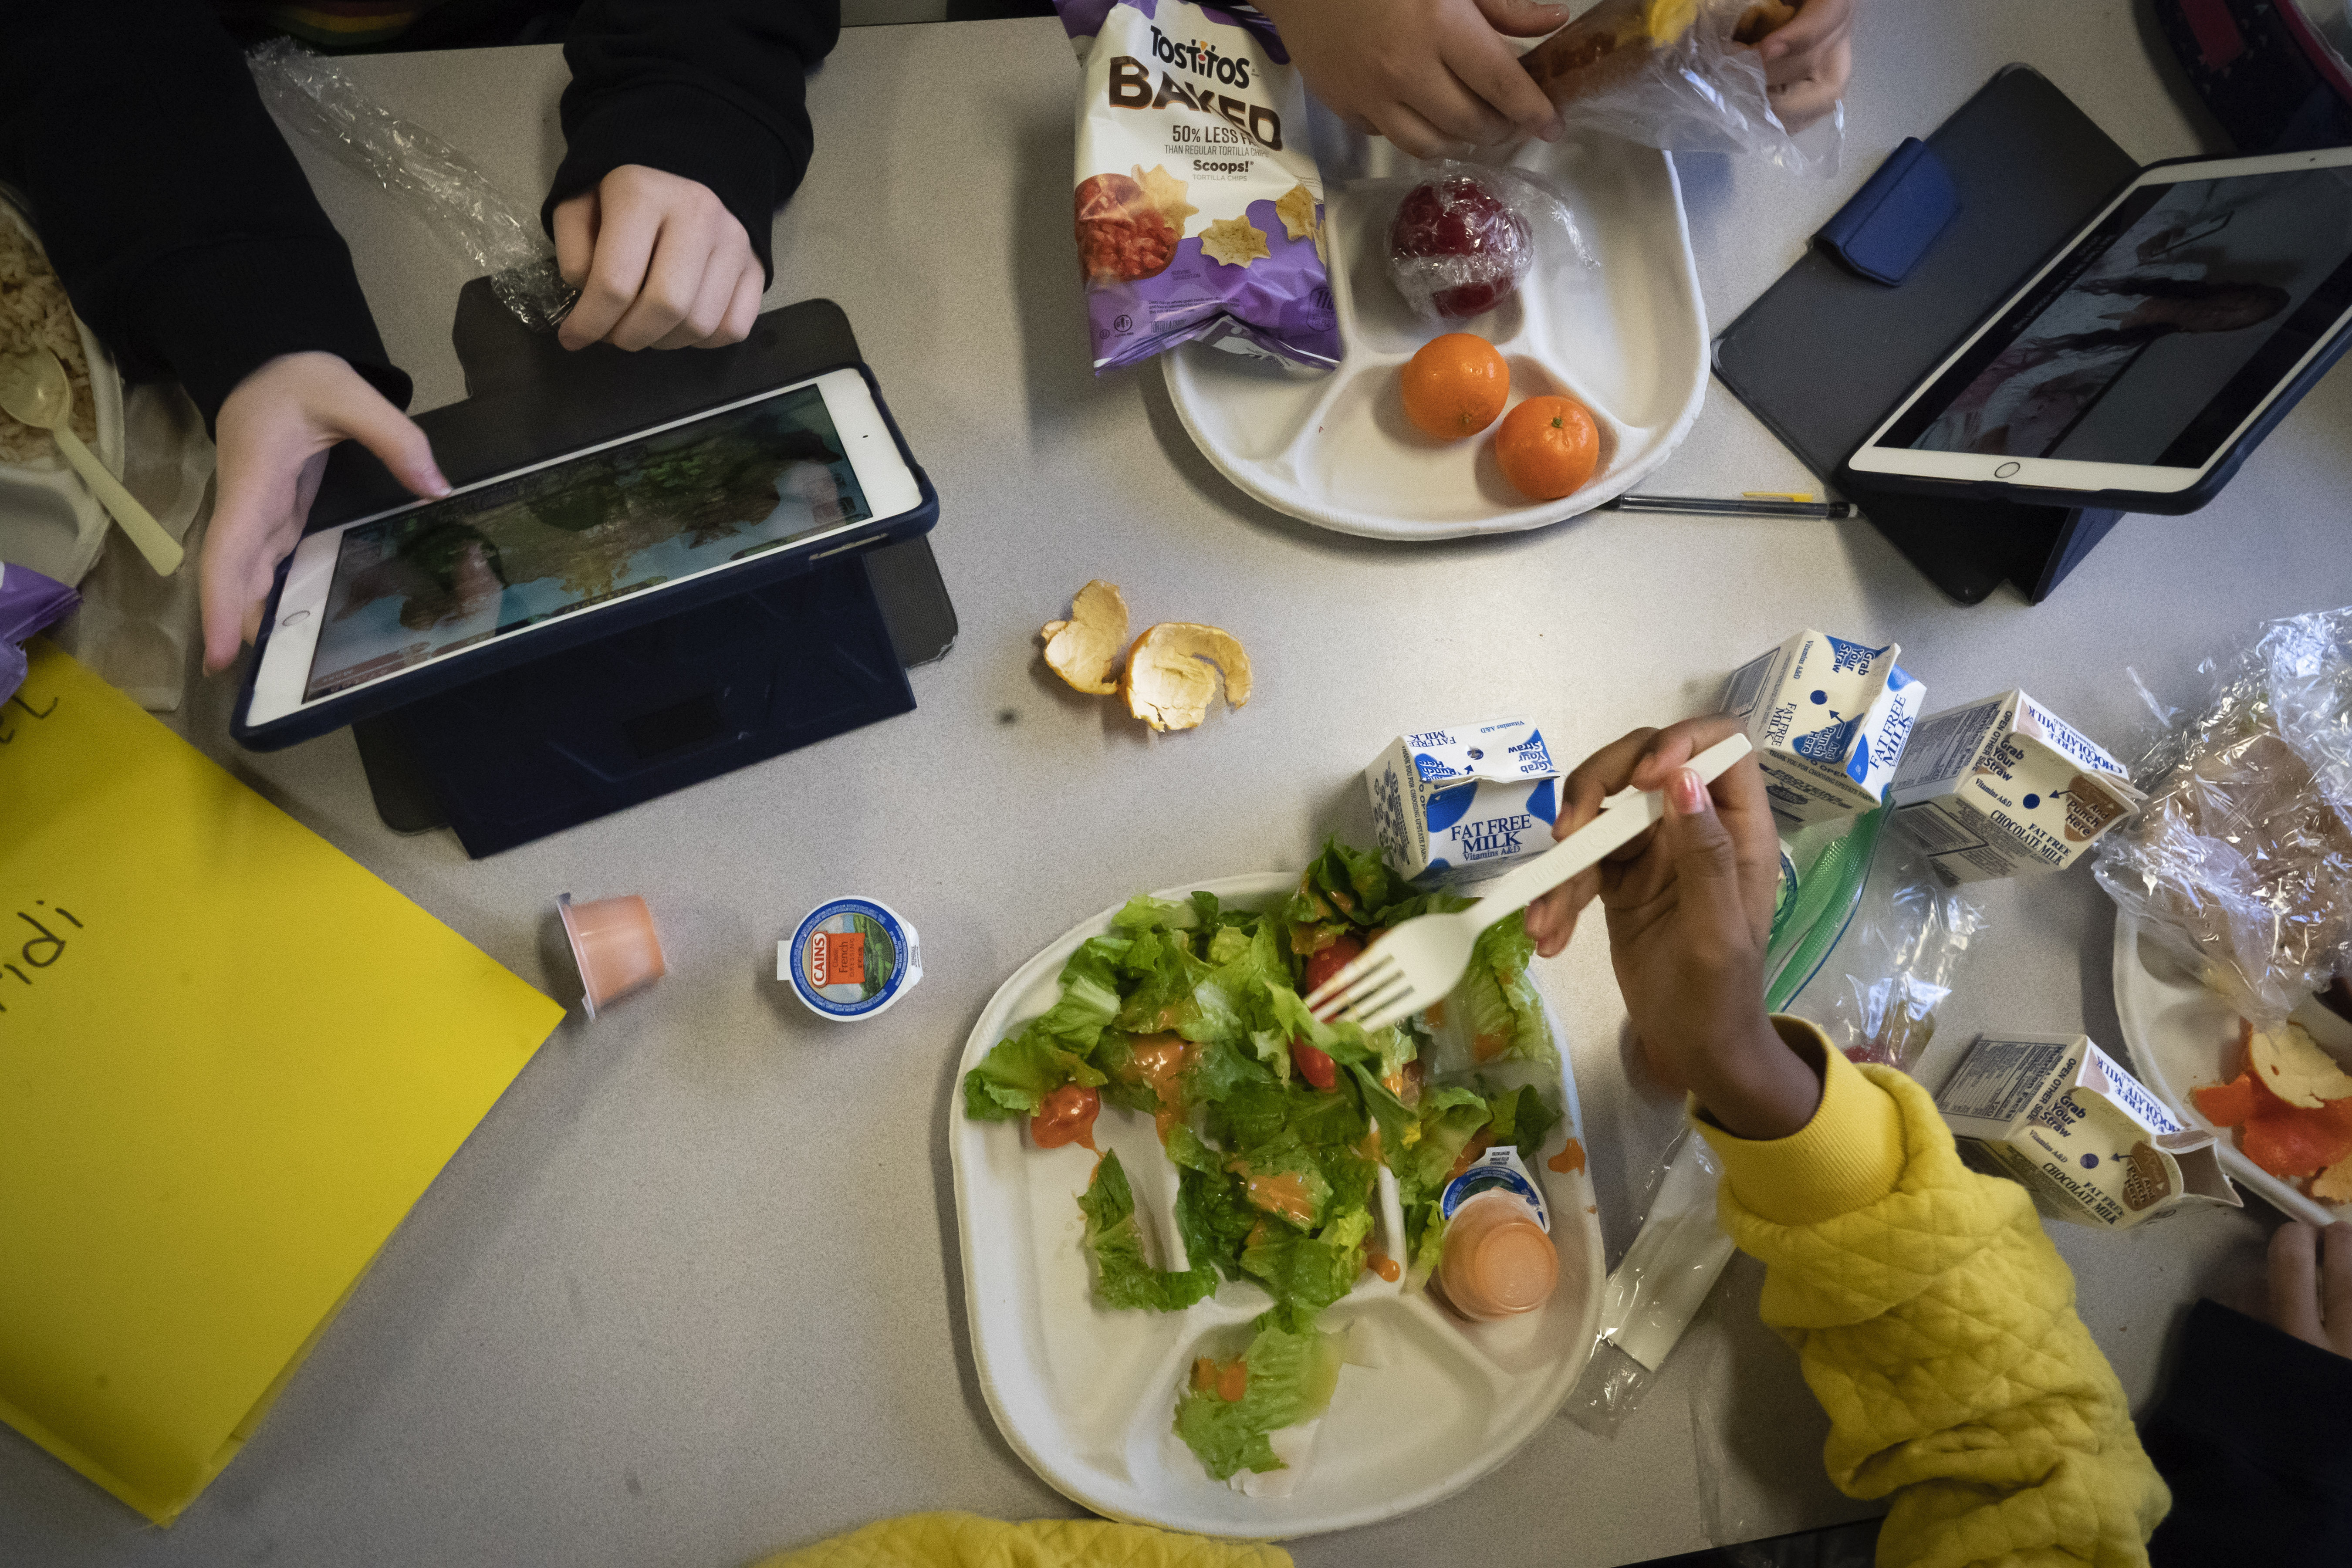 Makan siang sekolah yang lebih sehat dapat mengurangi obesitas, saran penelitian